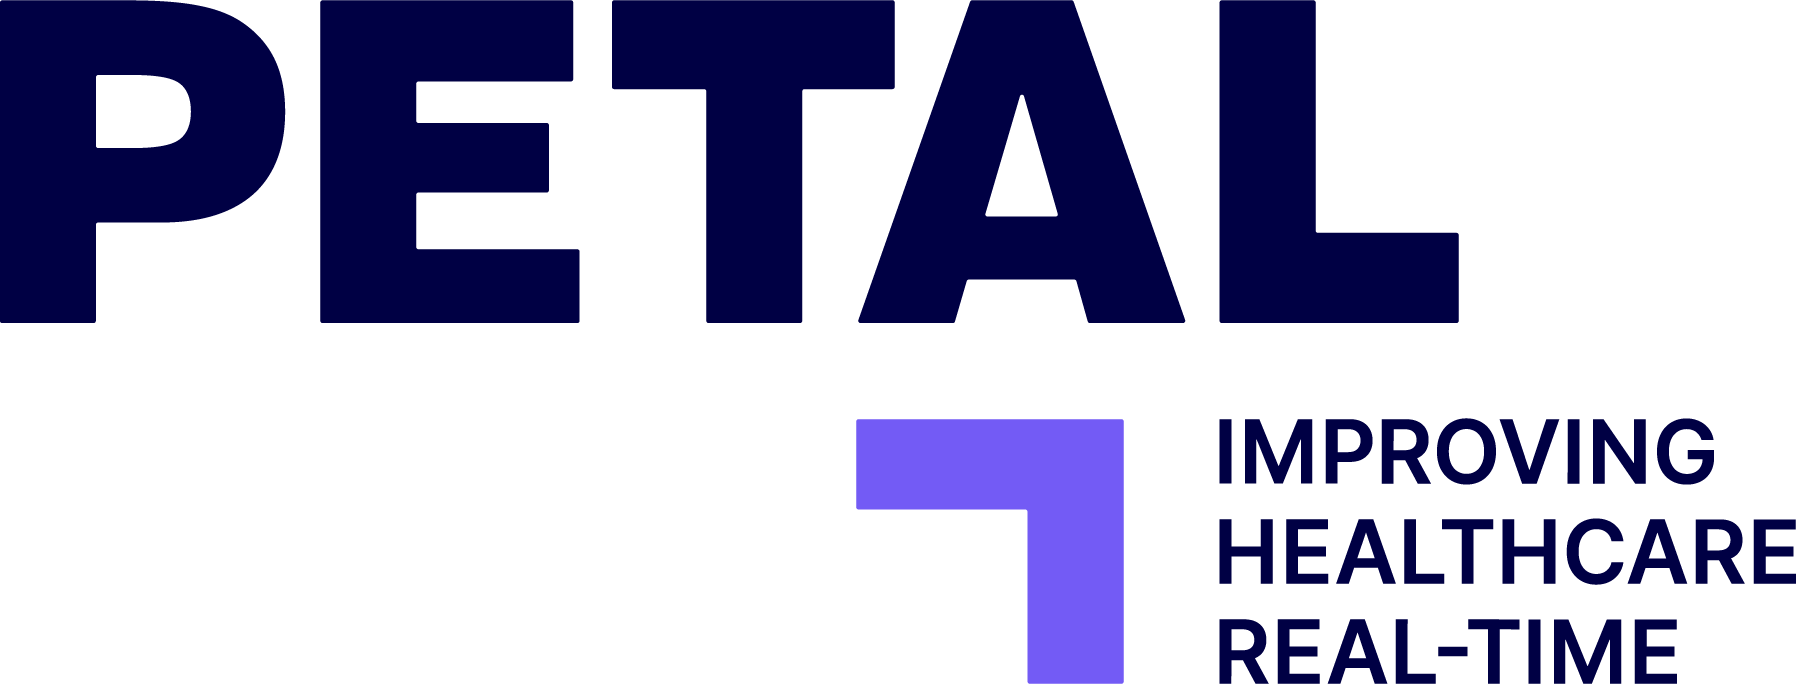 petal_officiel-logo-full-color-rgb